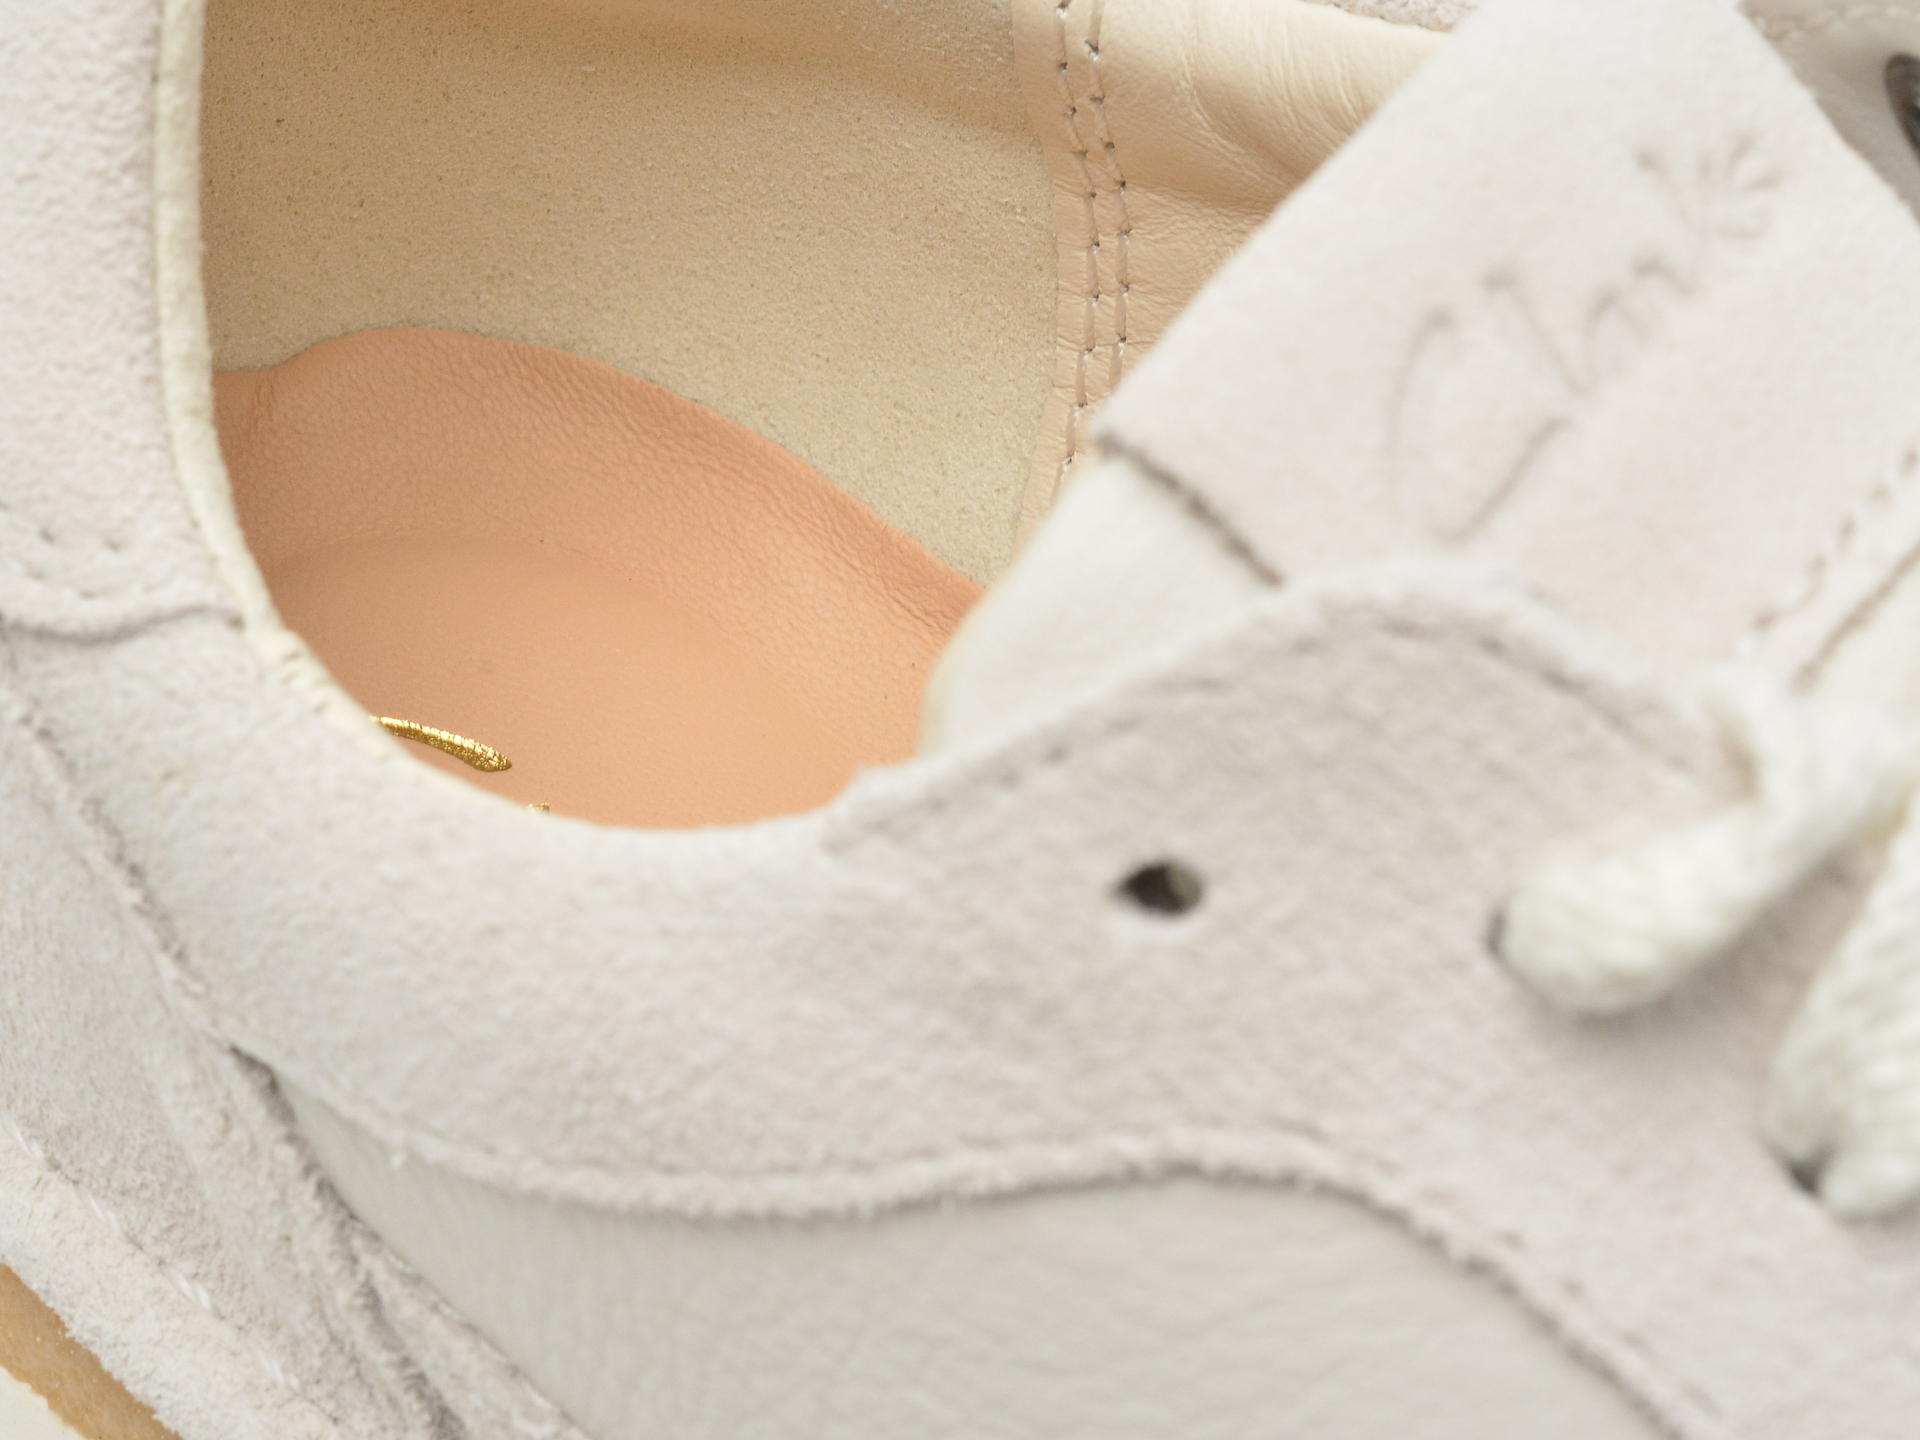 Poze Pantofi CLARKS albi, CRAFTRUN LACE 13-I, din piele intoarsa otter.ro